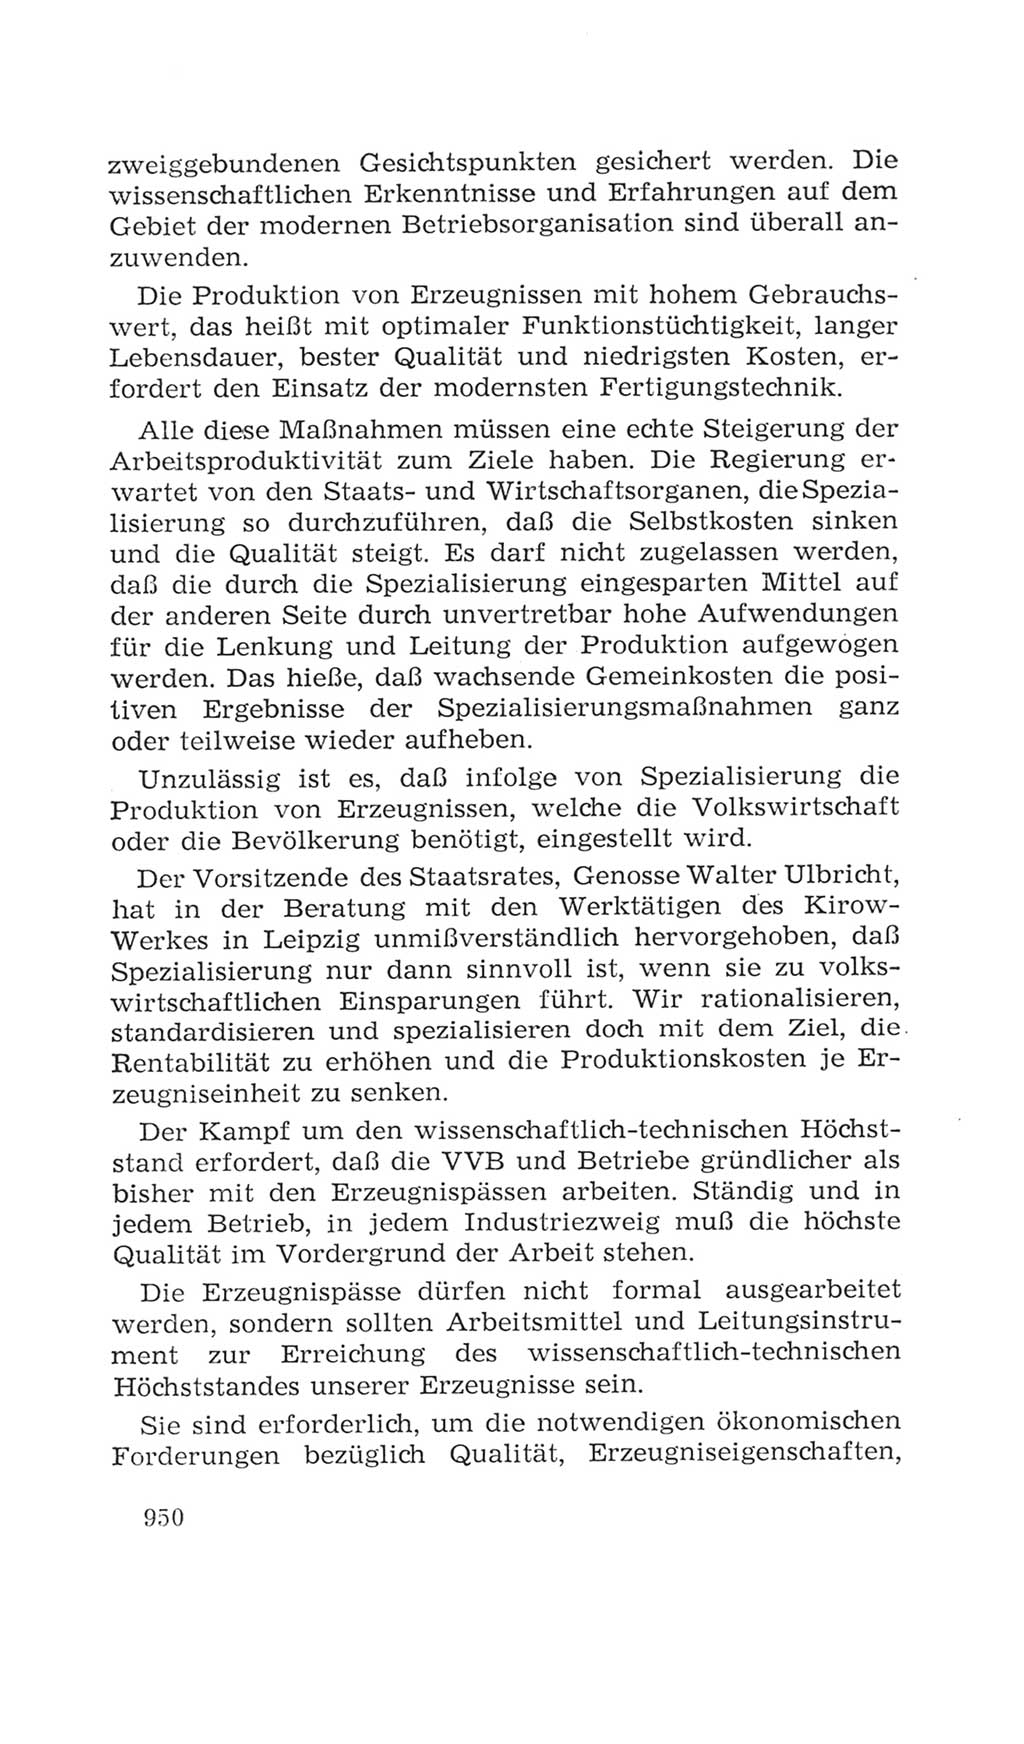 Volkskammer (VK) der Deutschen Demokratischen Republik (DDR), 4. Wahlperiode 1963-1967, Seite 950 (VK. DDR 4. WP. 1963-1967, S. 950)